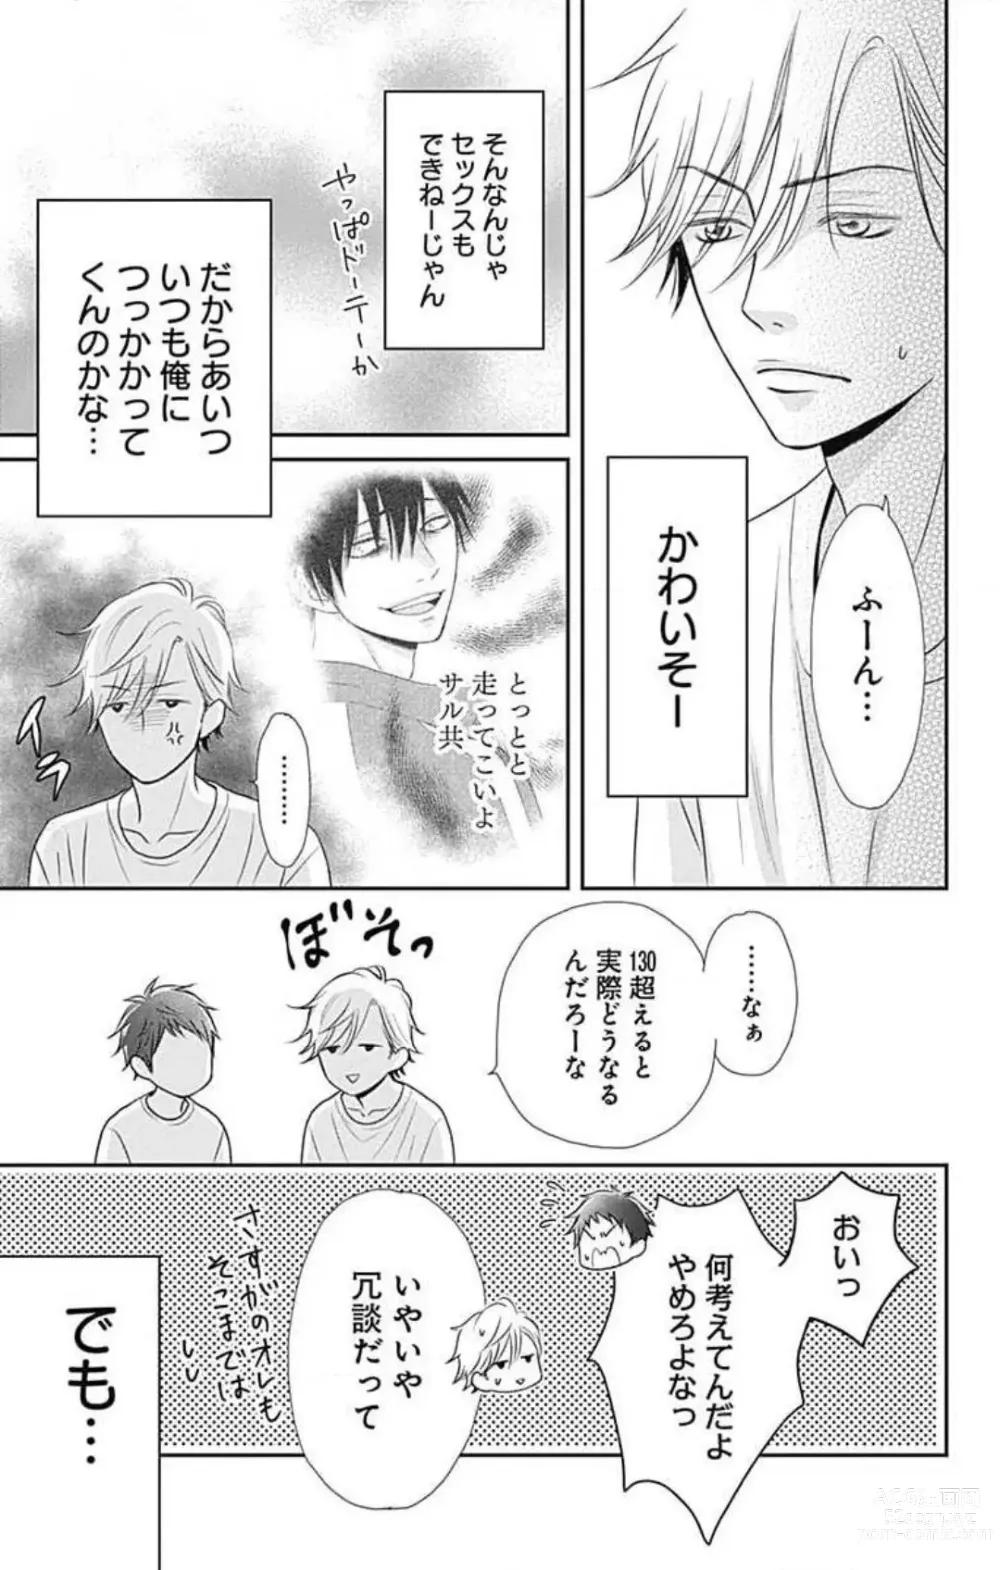 Page 11 of manga Ichinose-kun wa Koufun Dekinai 1-14